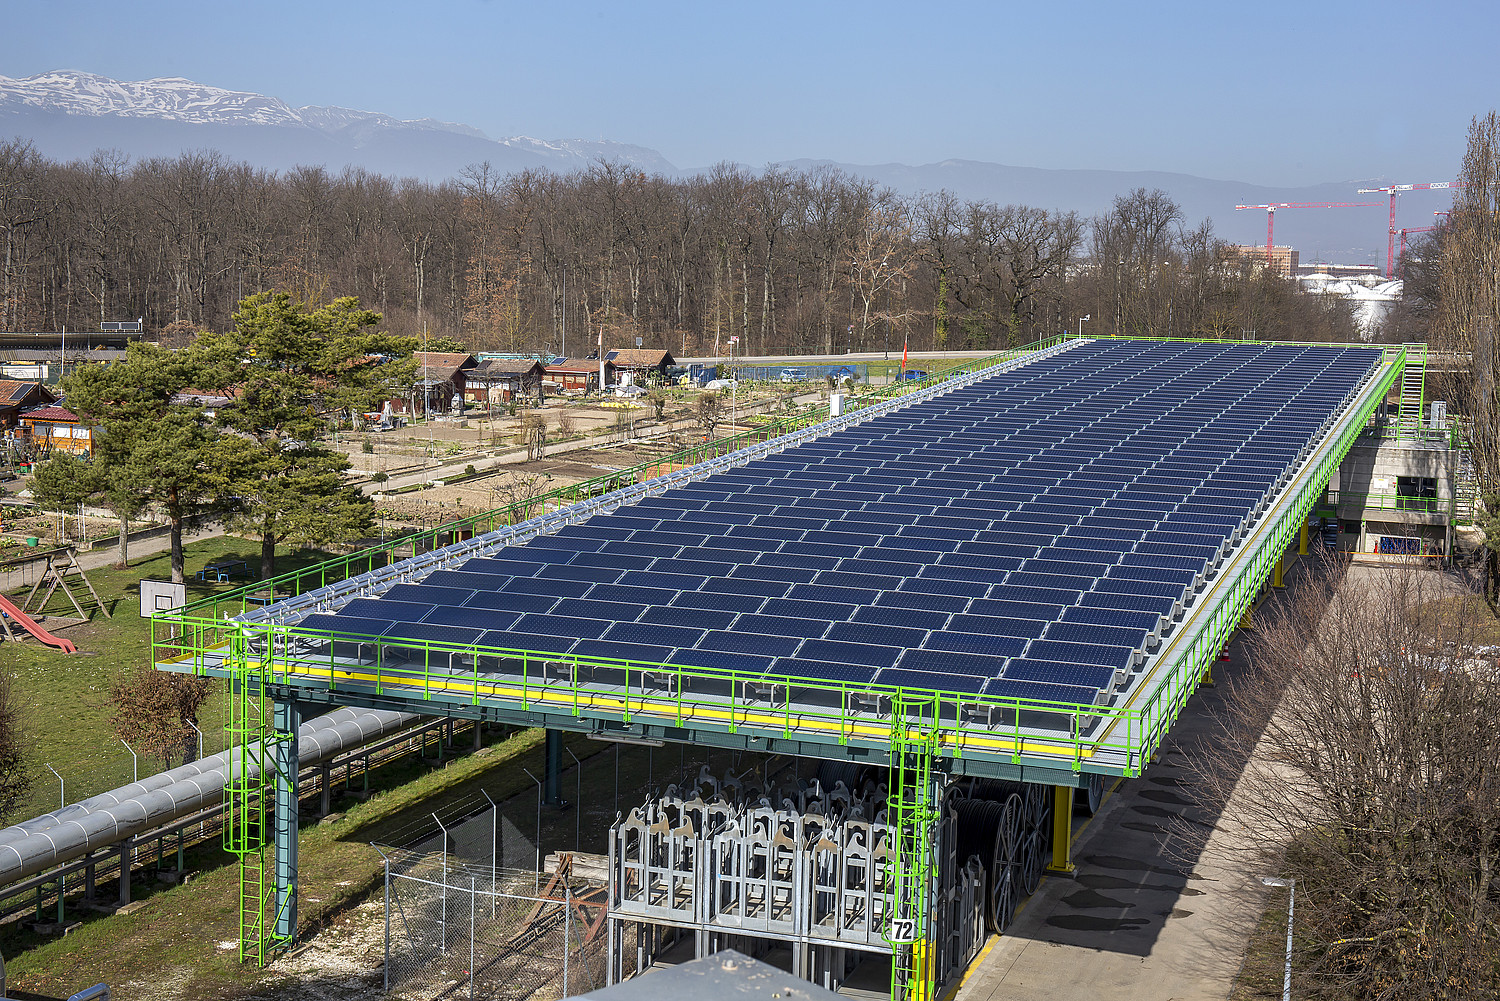 Une installation solaire thermique de 800 m² dans le quartier du Lignon, en banlieue genevoise, alimente en eau chaude le réseau de chauffage urbain de Genève depuis décembre 2020.